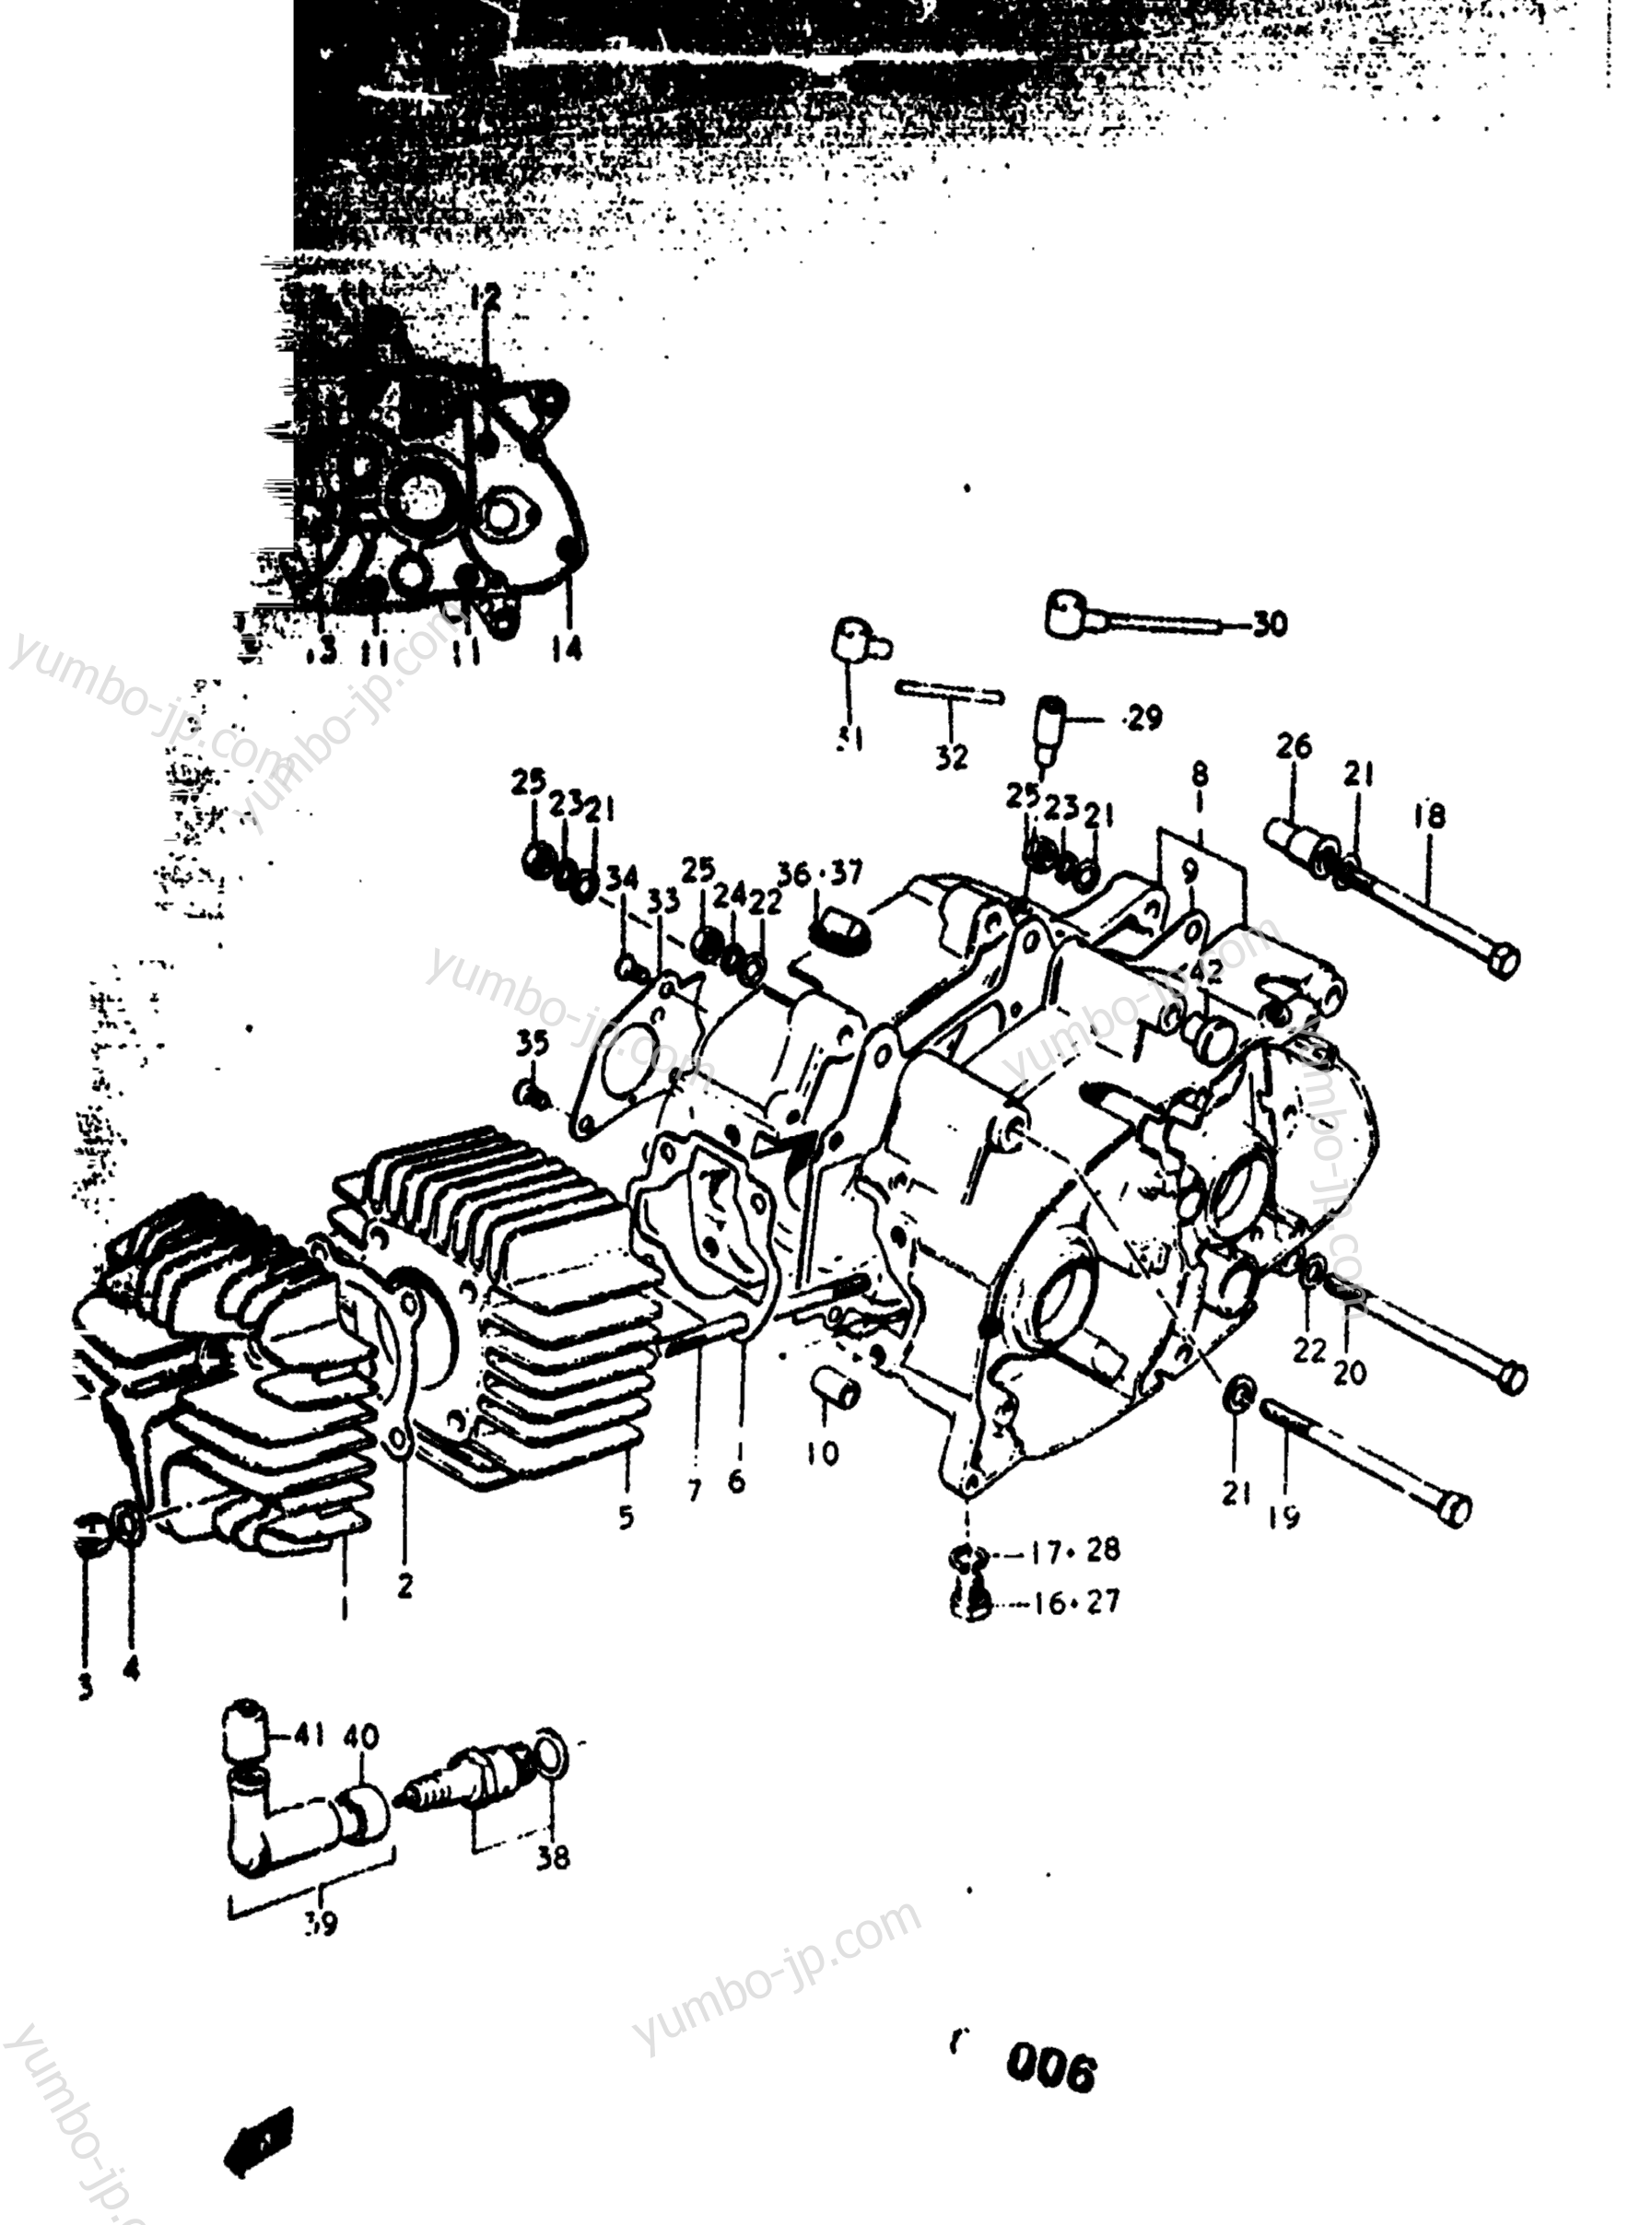 Cylinder - Crankcase for motorcycles SUZUKI RV90 1975 year